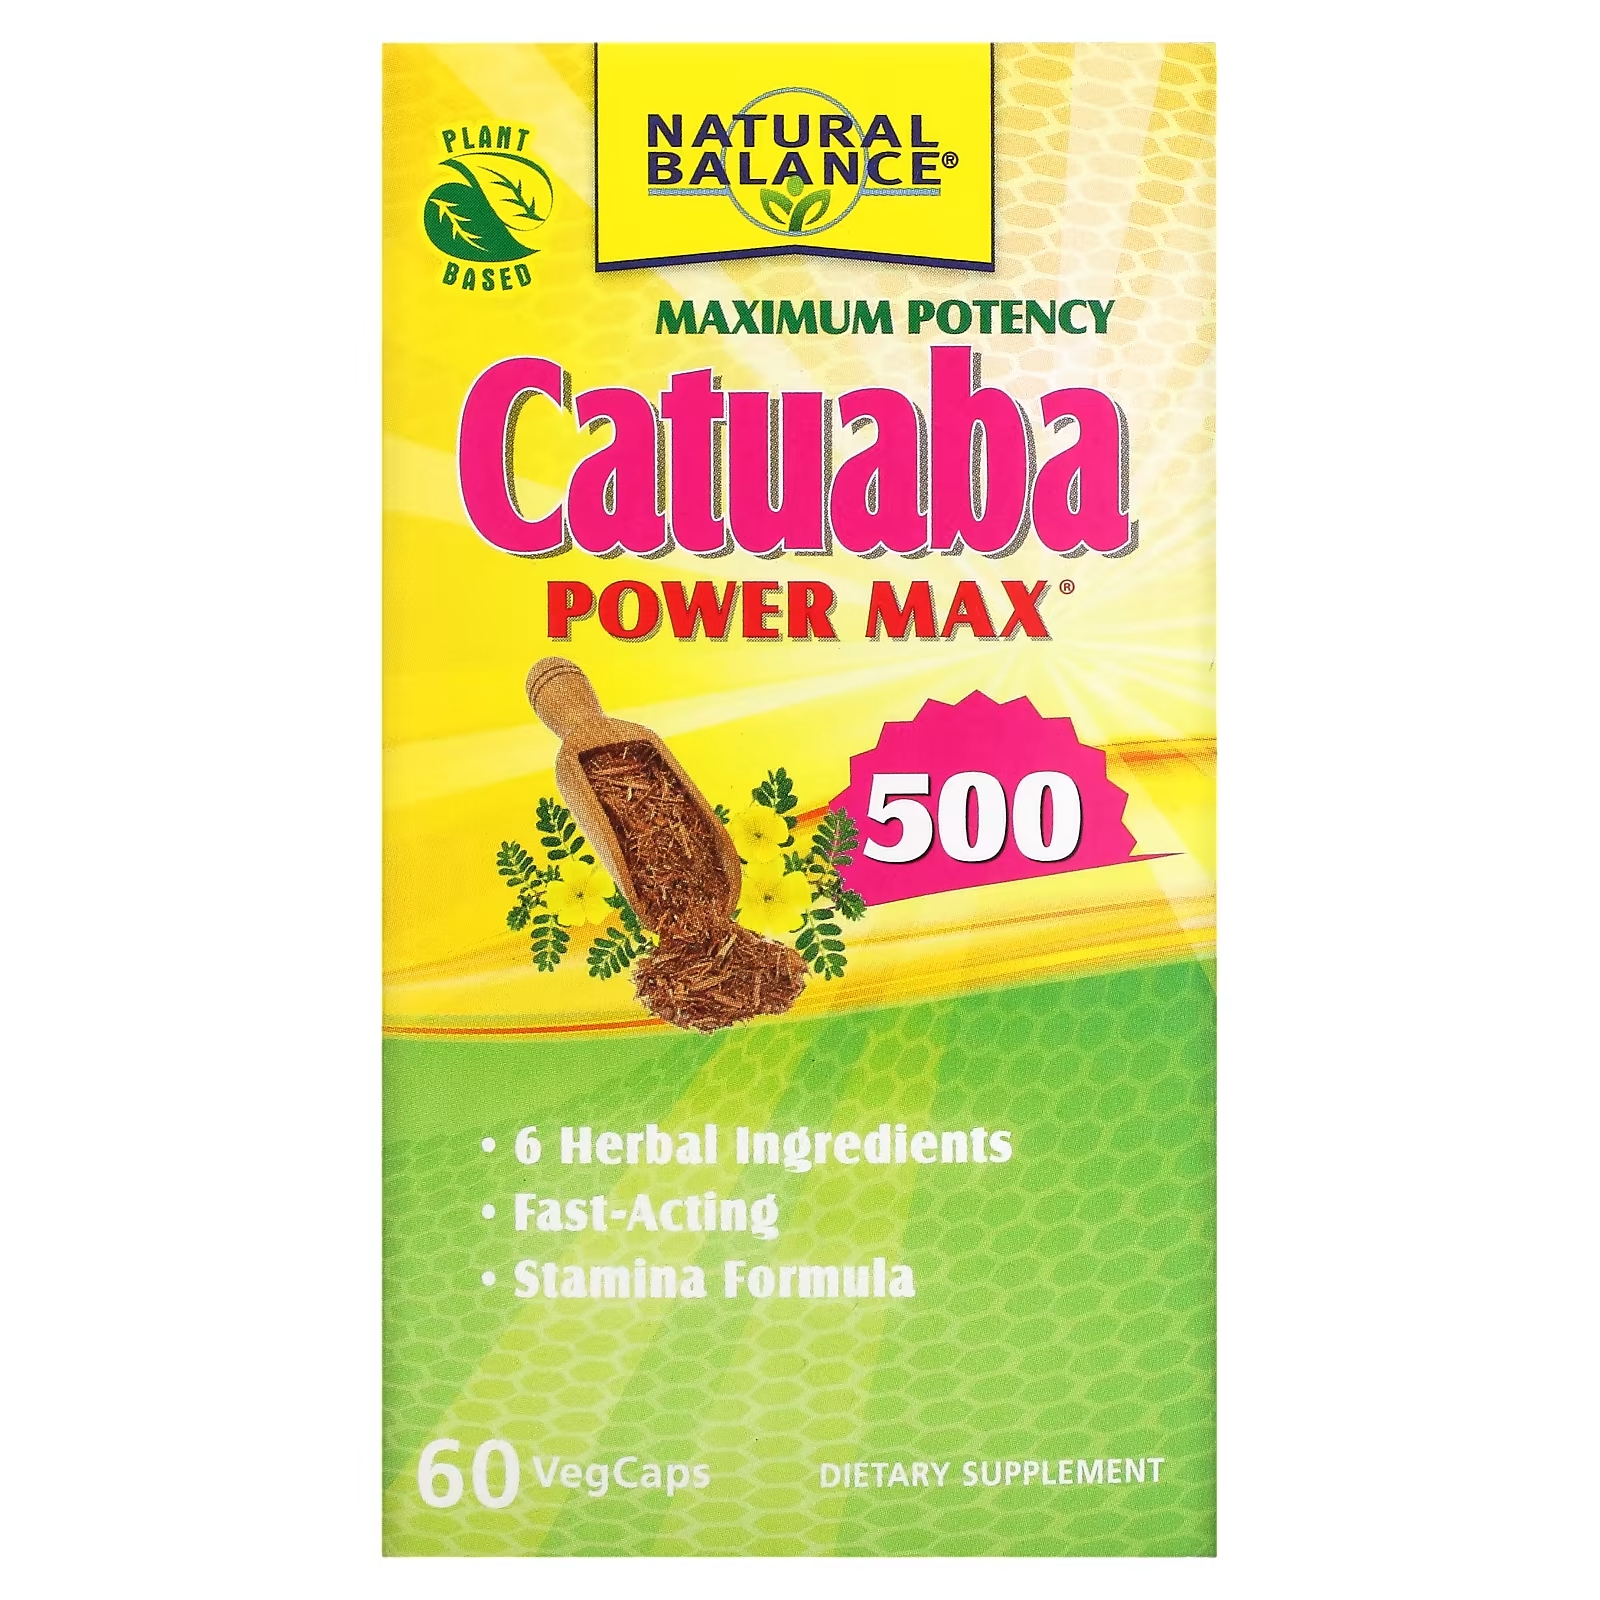 Natural Balance Катуаба Power Max 500 максимальная эффективность, 60 растительных капсул женская формула natural balance cobra women 60 растительных капсул